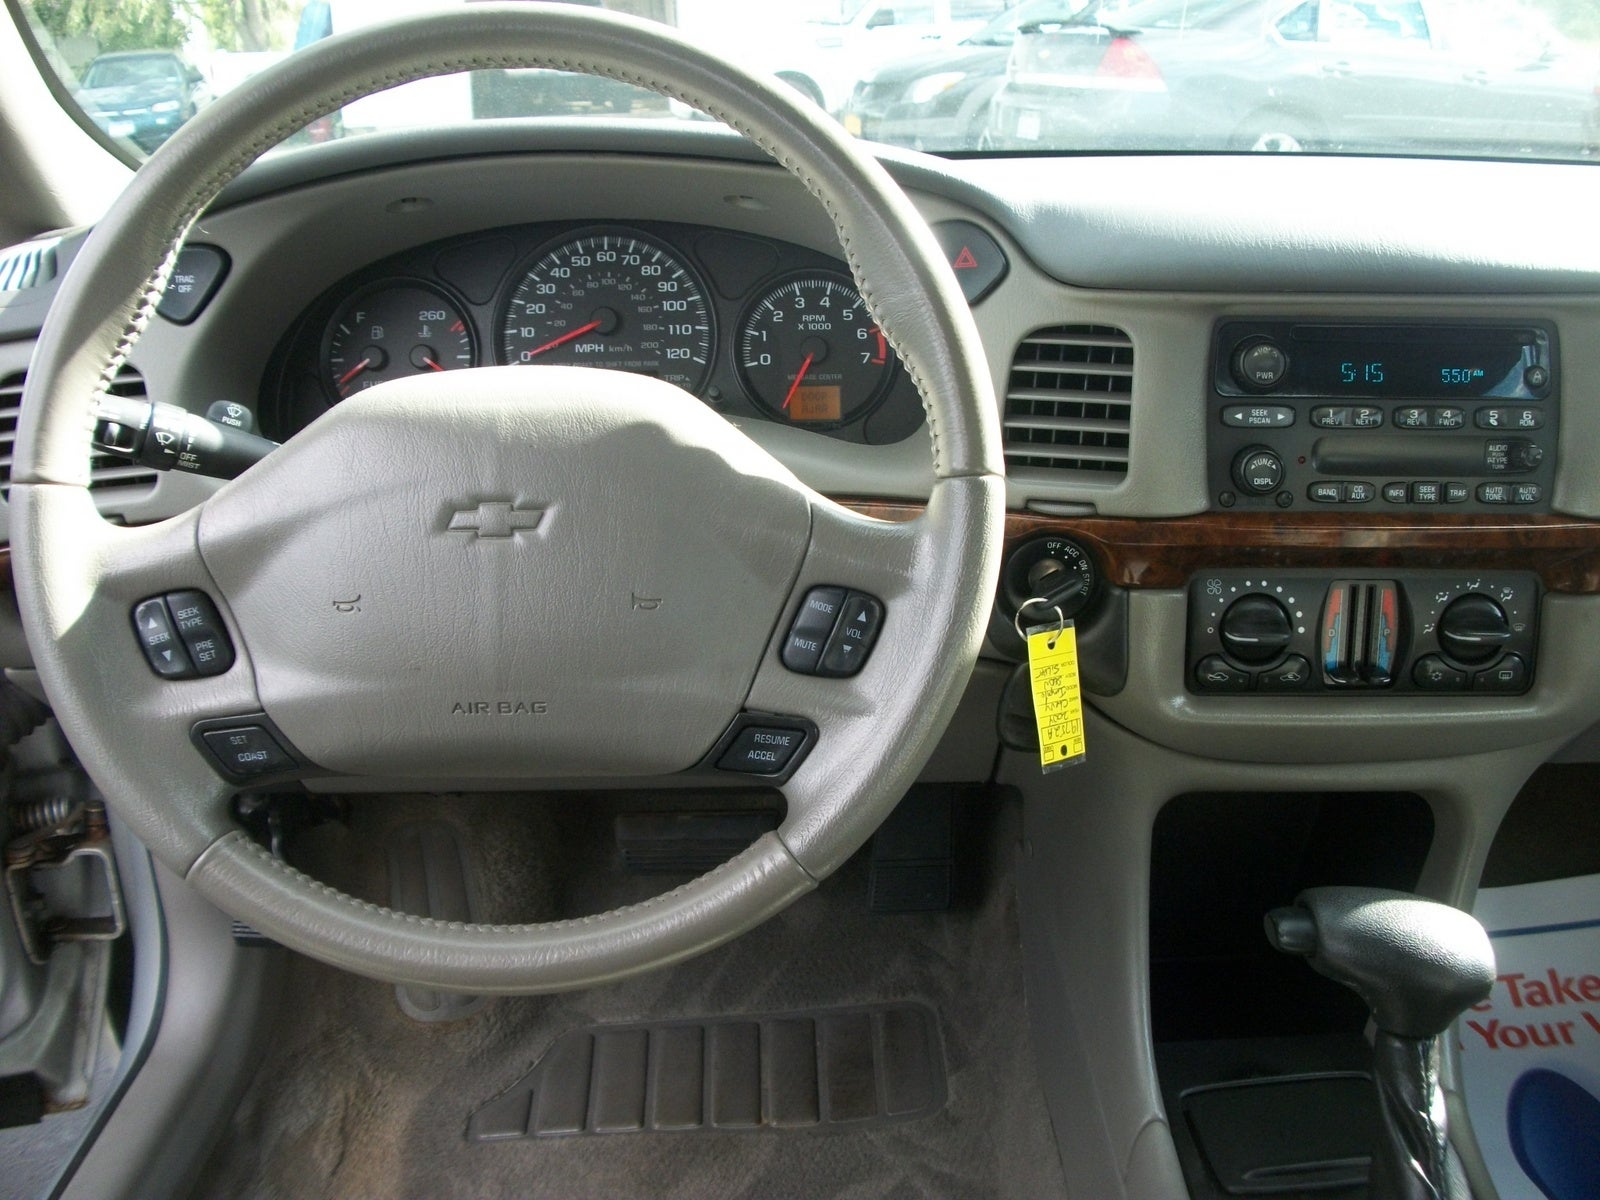 2004 Chevrolet Impala - Interior Pictures - CarGurus.